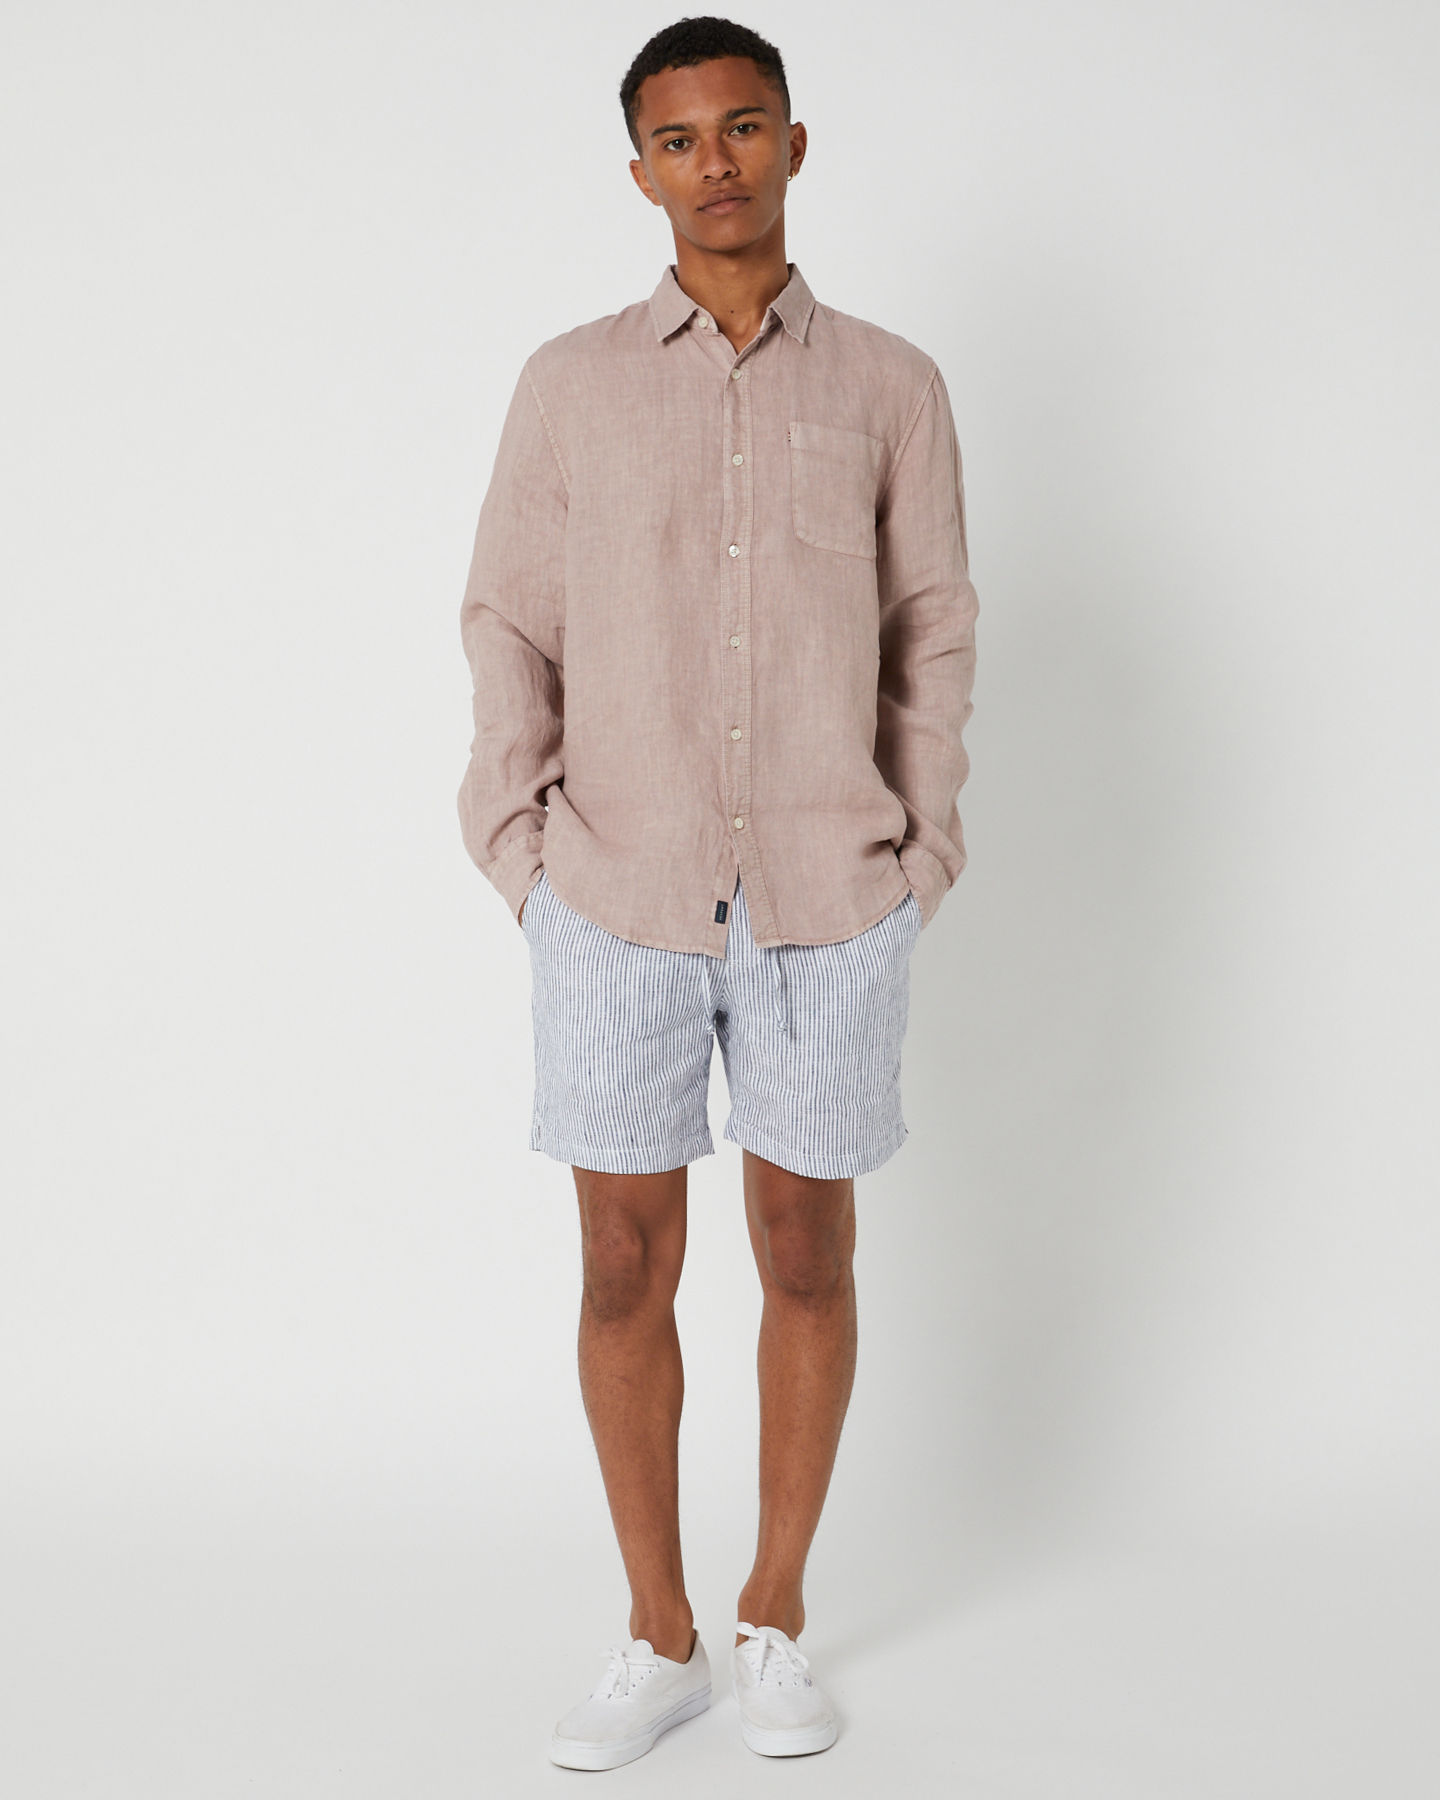 Academy Brand Hampton Linen Shirt - Pink Sand | SurfStitch